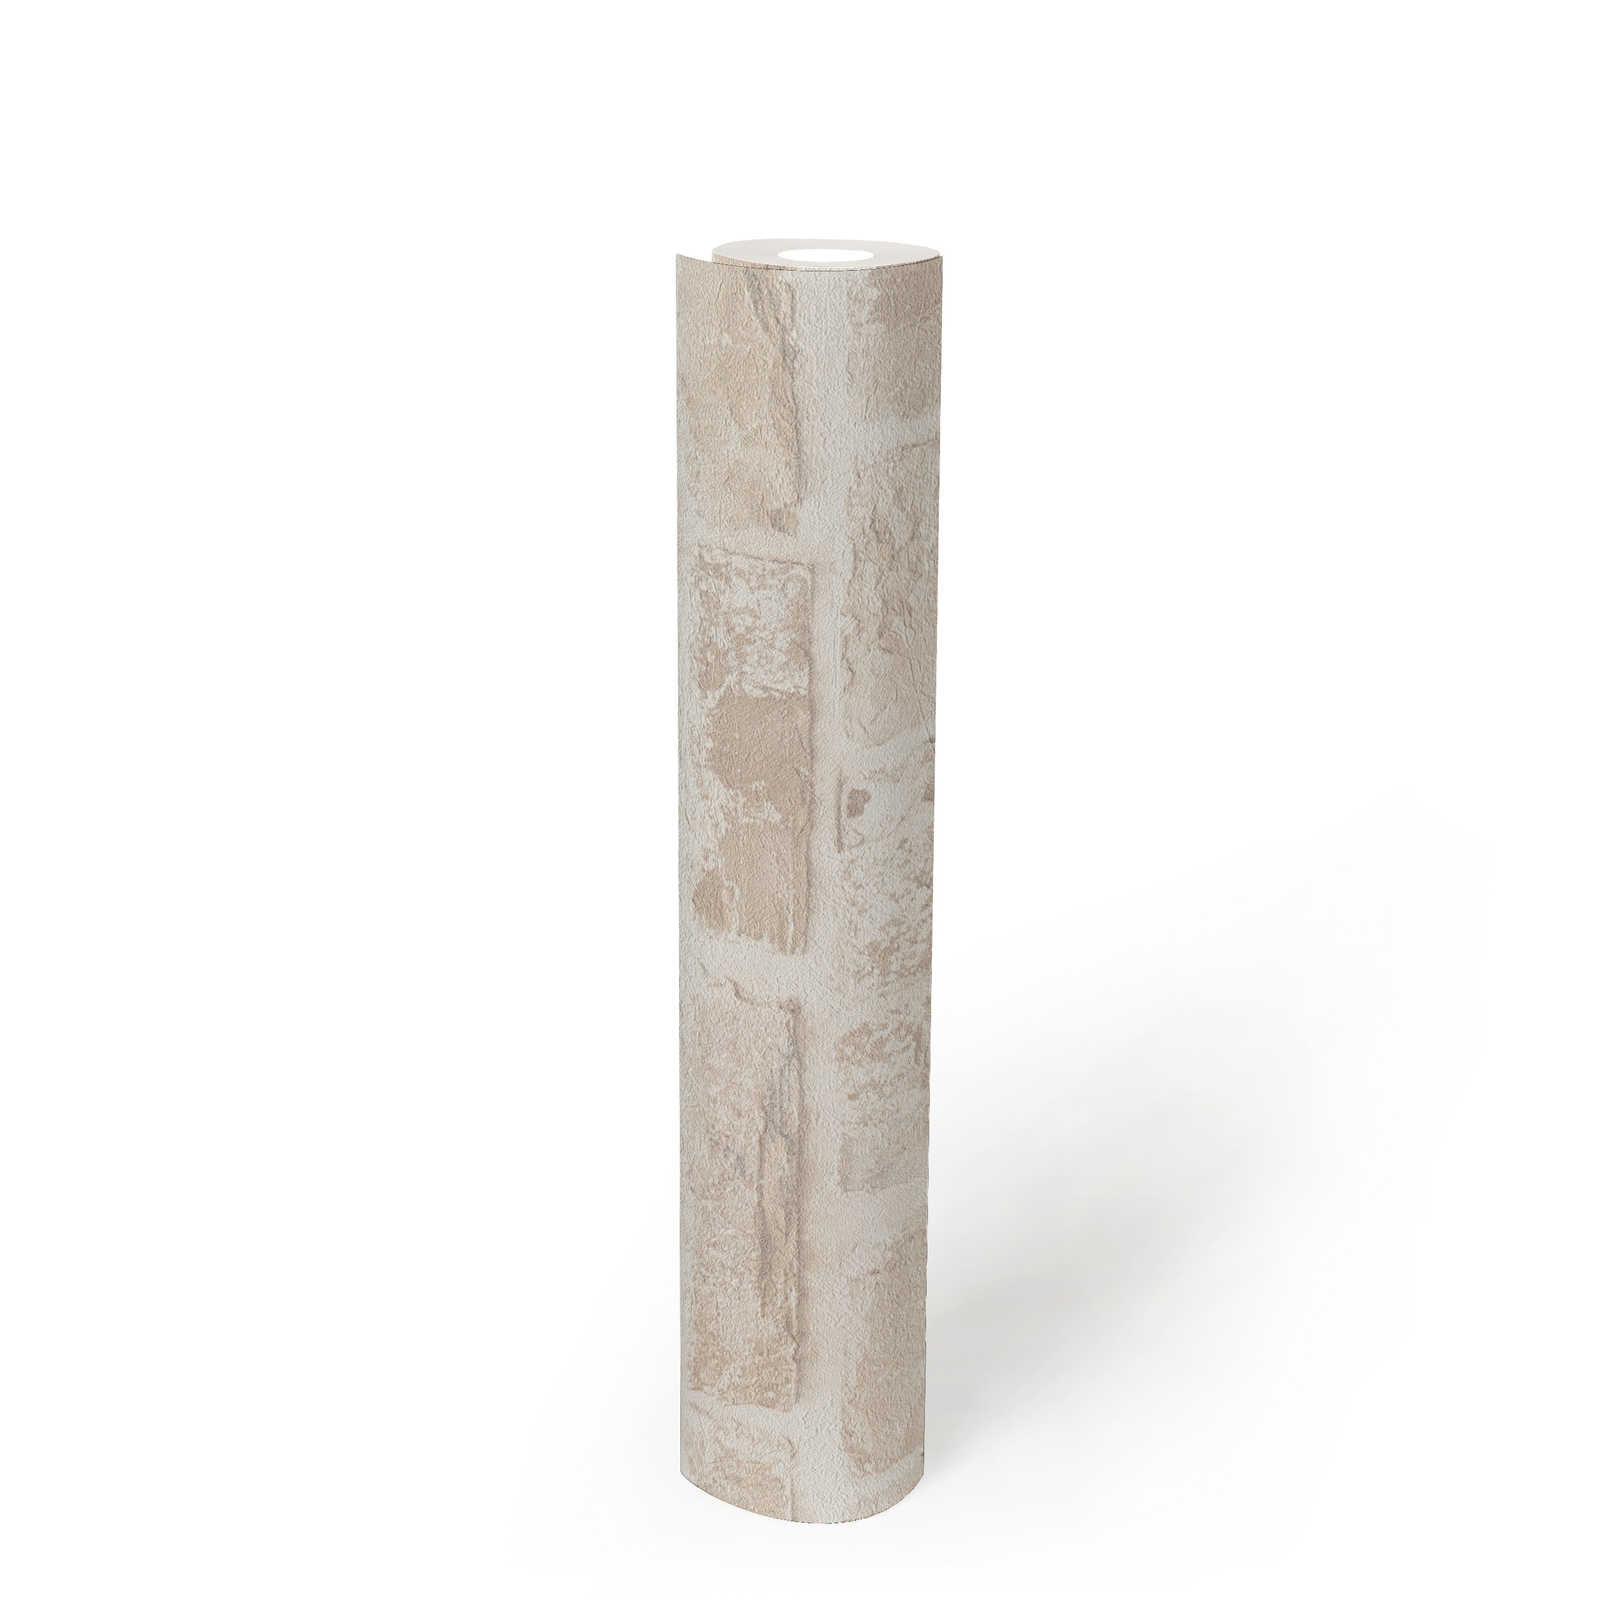             Vliestapete mit Steinoptik PVC-frei – Beige, Weiß
        